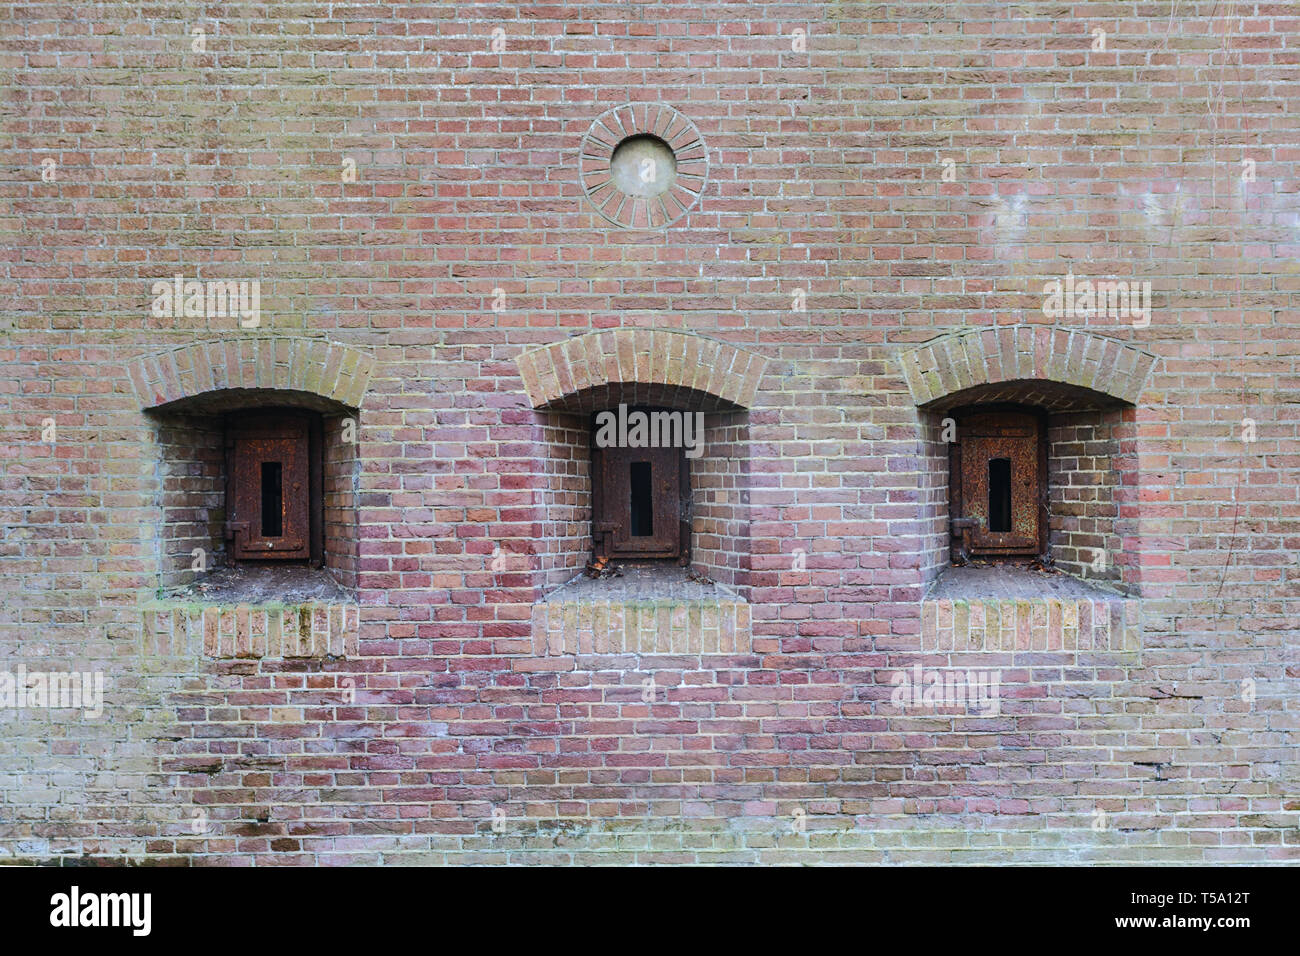 Brick Wall von einer alten Festung mit drei embresures mit rostigem Eisen Luken geschlossen. Stockfoto